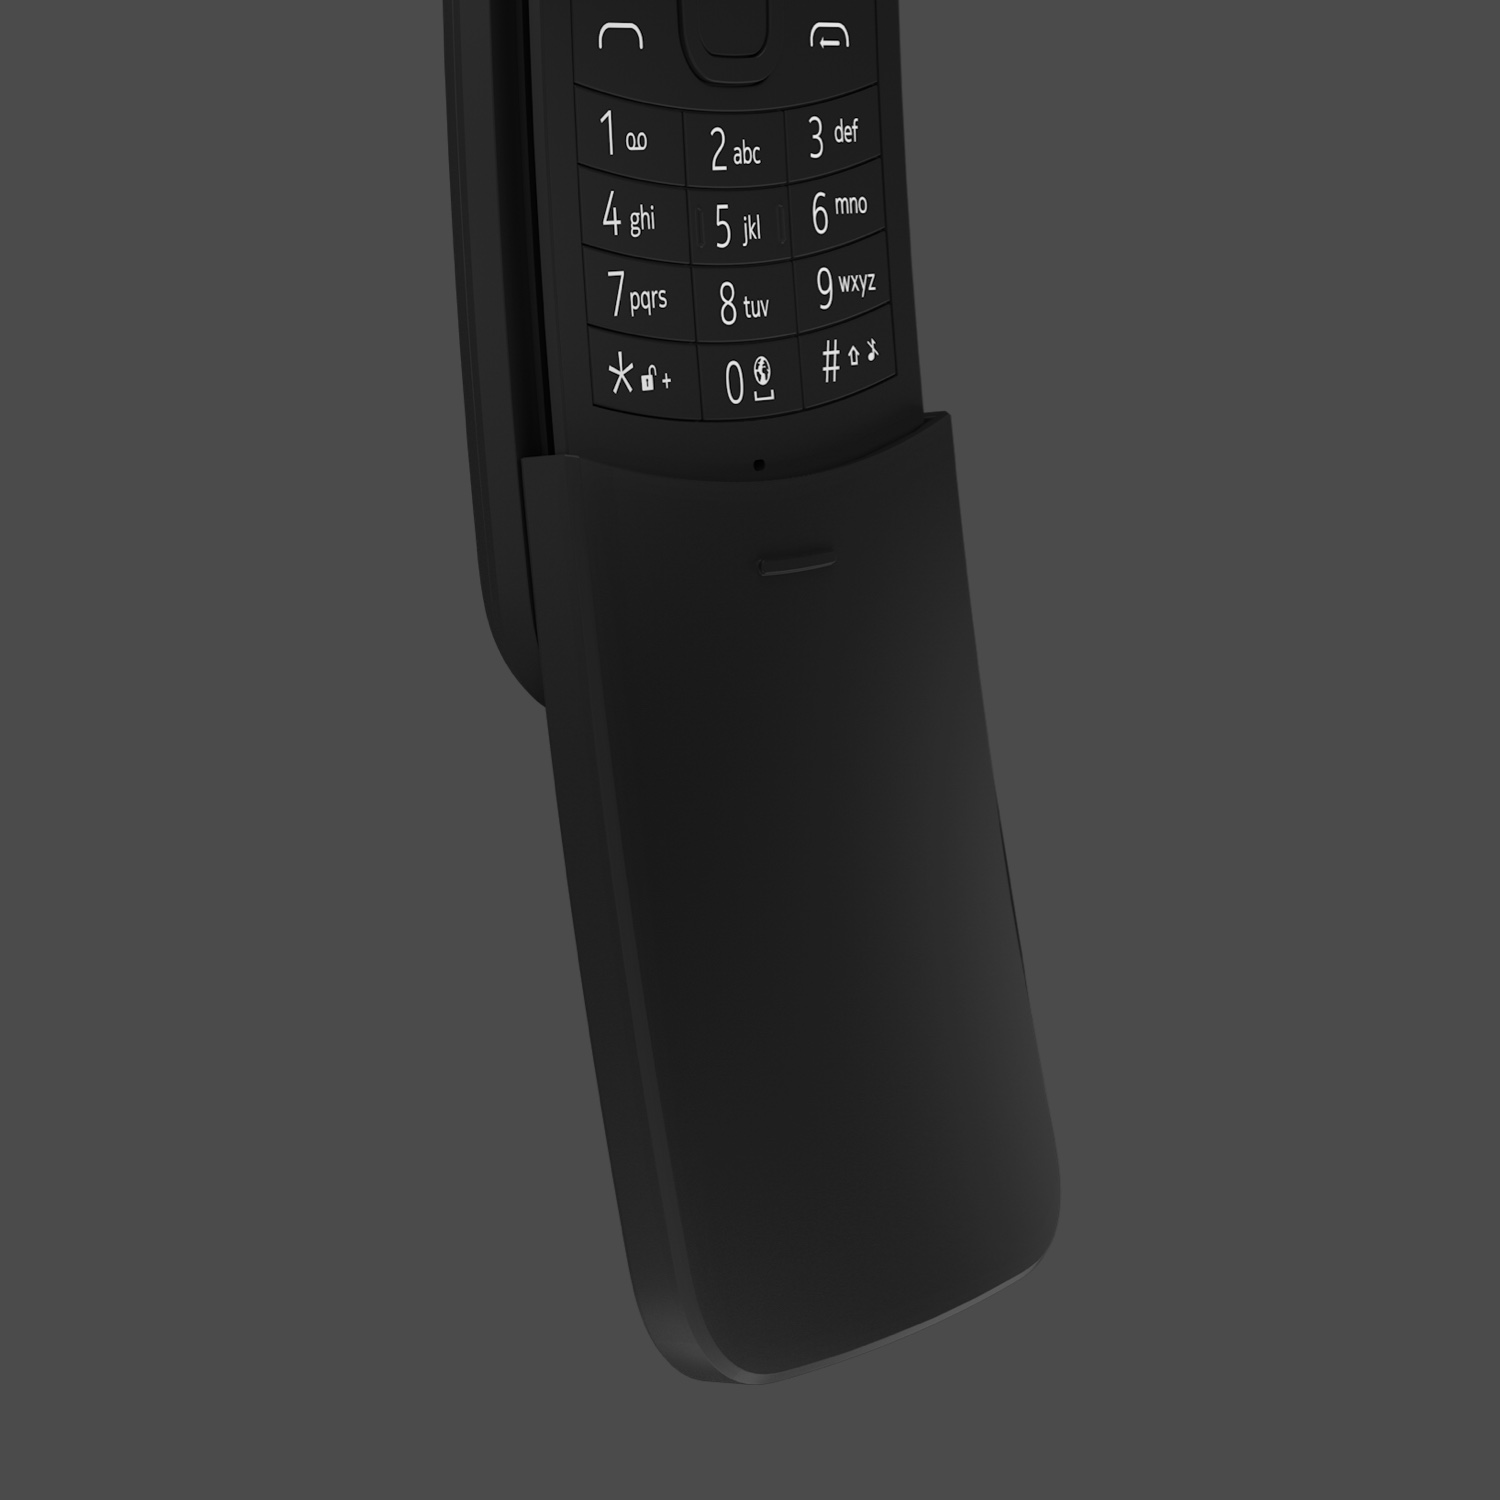 Nokia 8110 4G: Bạn sẽ không thể rời mắt khỏi Nokia 8110 4G khi đã sở hữu nó. Với thiết kế vỏ ngoài độc đáo và các tính năng đầy đủ, chiếc điện thoại này sẽ đem lại cho bạn trải nghiệm tuyệt vời và tiện ích.